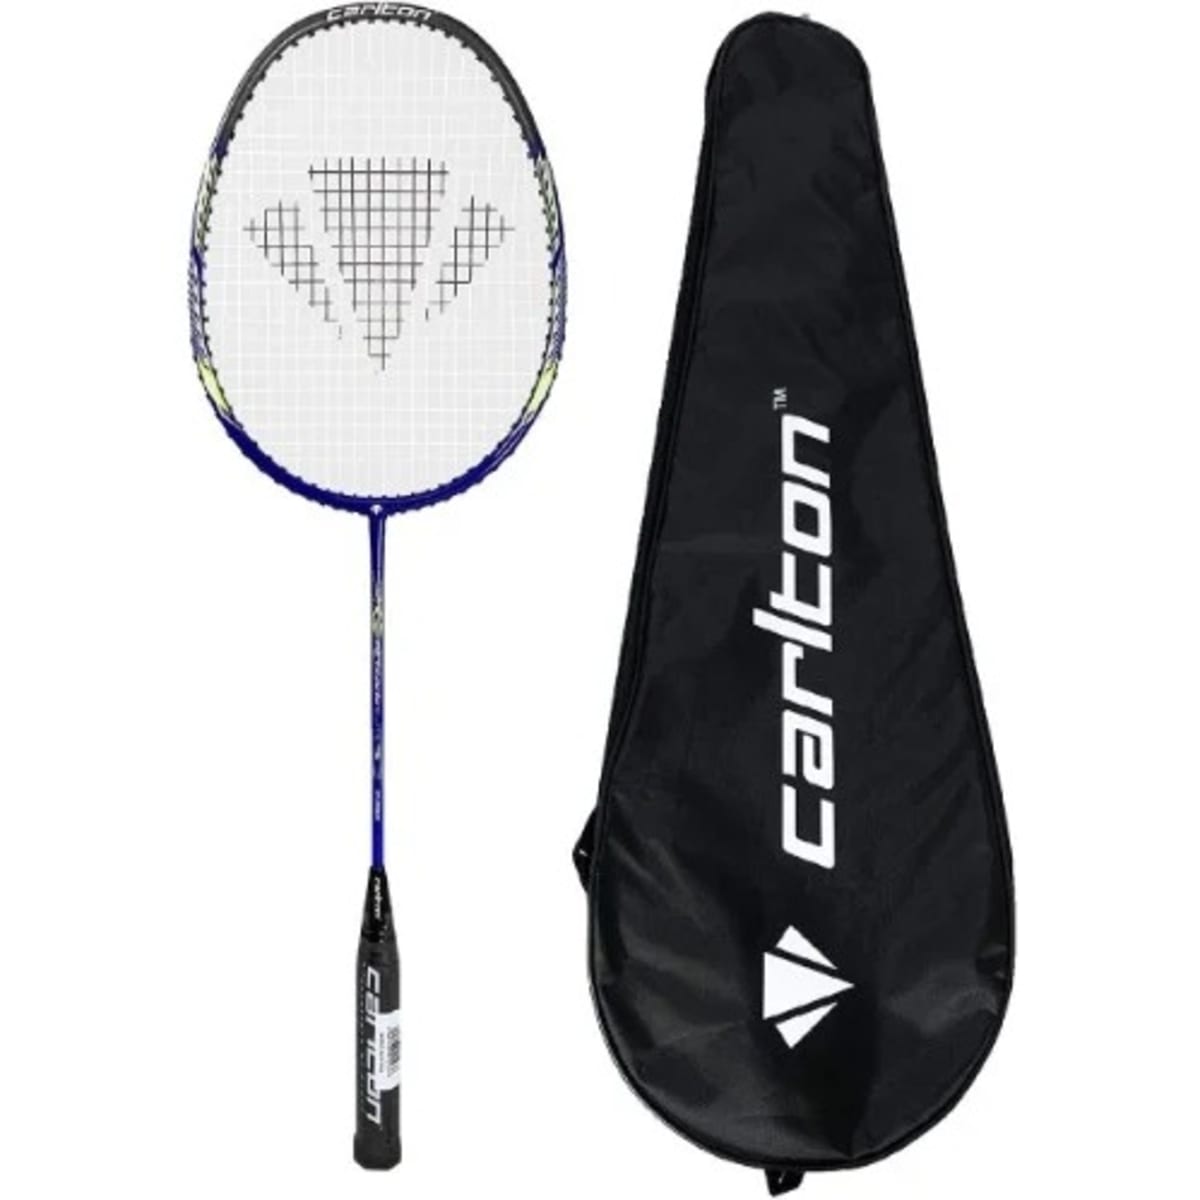 Carlton Badminton Racket Konga Online Shopping